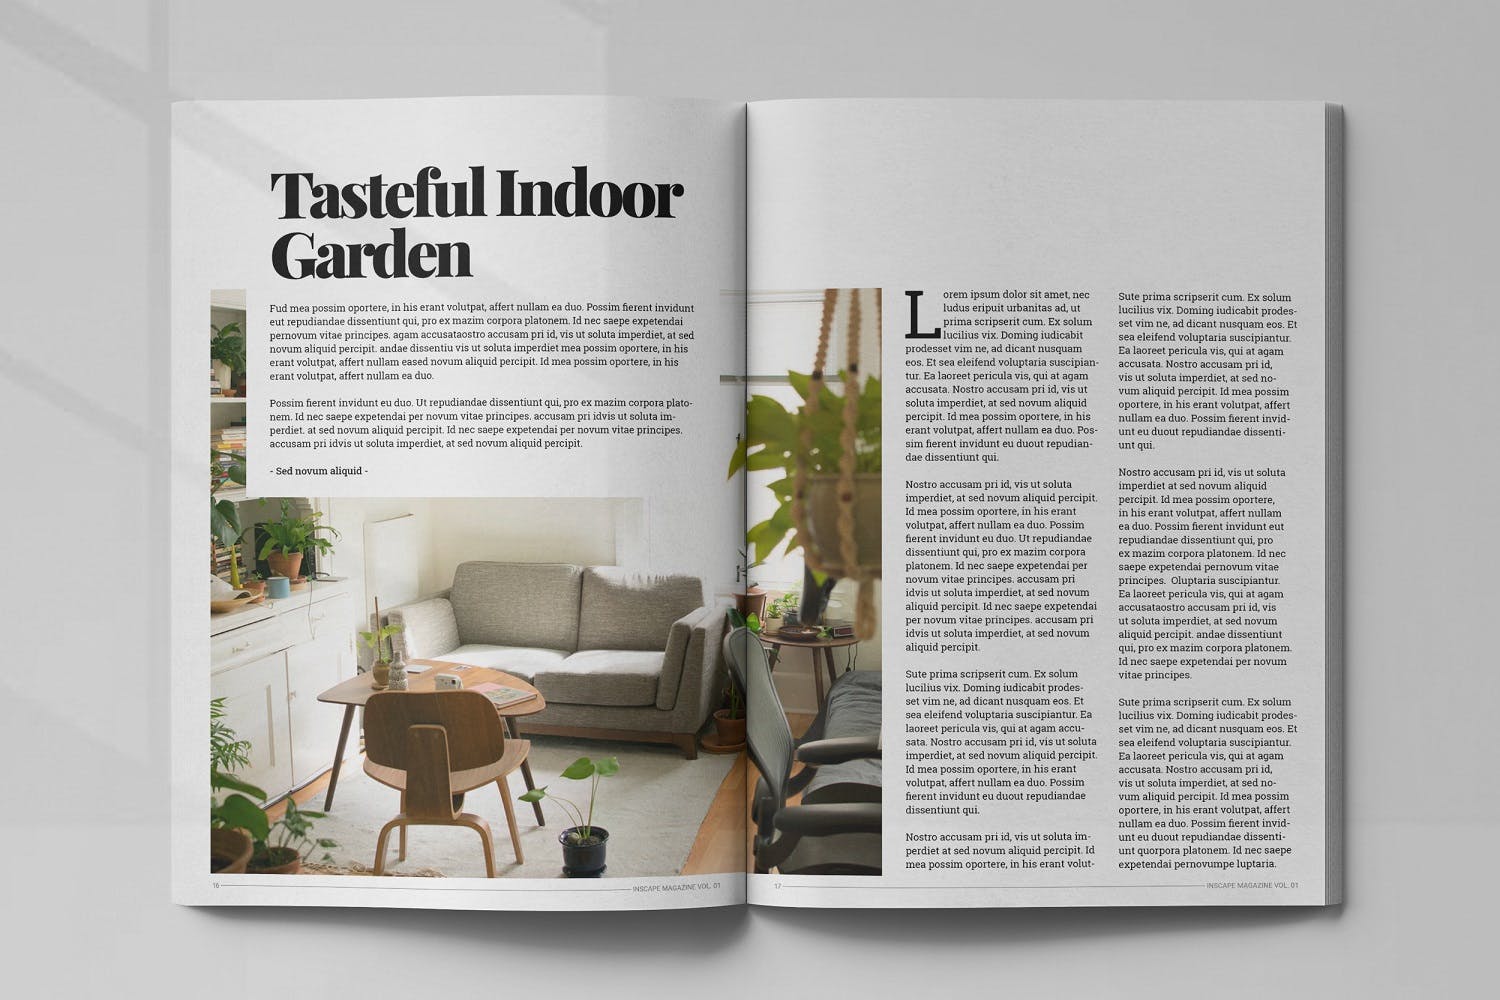 室内设计主题素材库精选杂志排版设计模板 Inscape Interior Magazine插图(8)